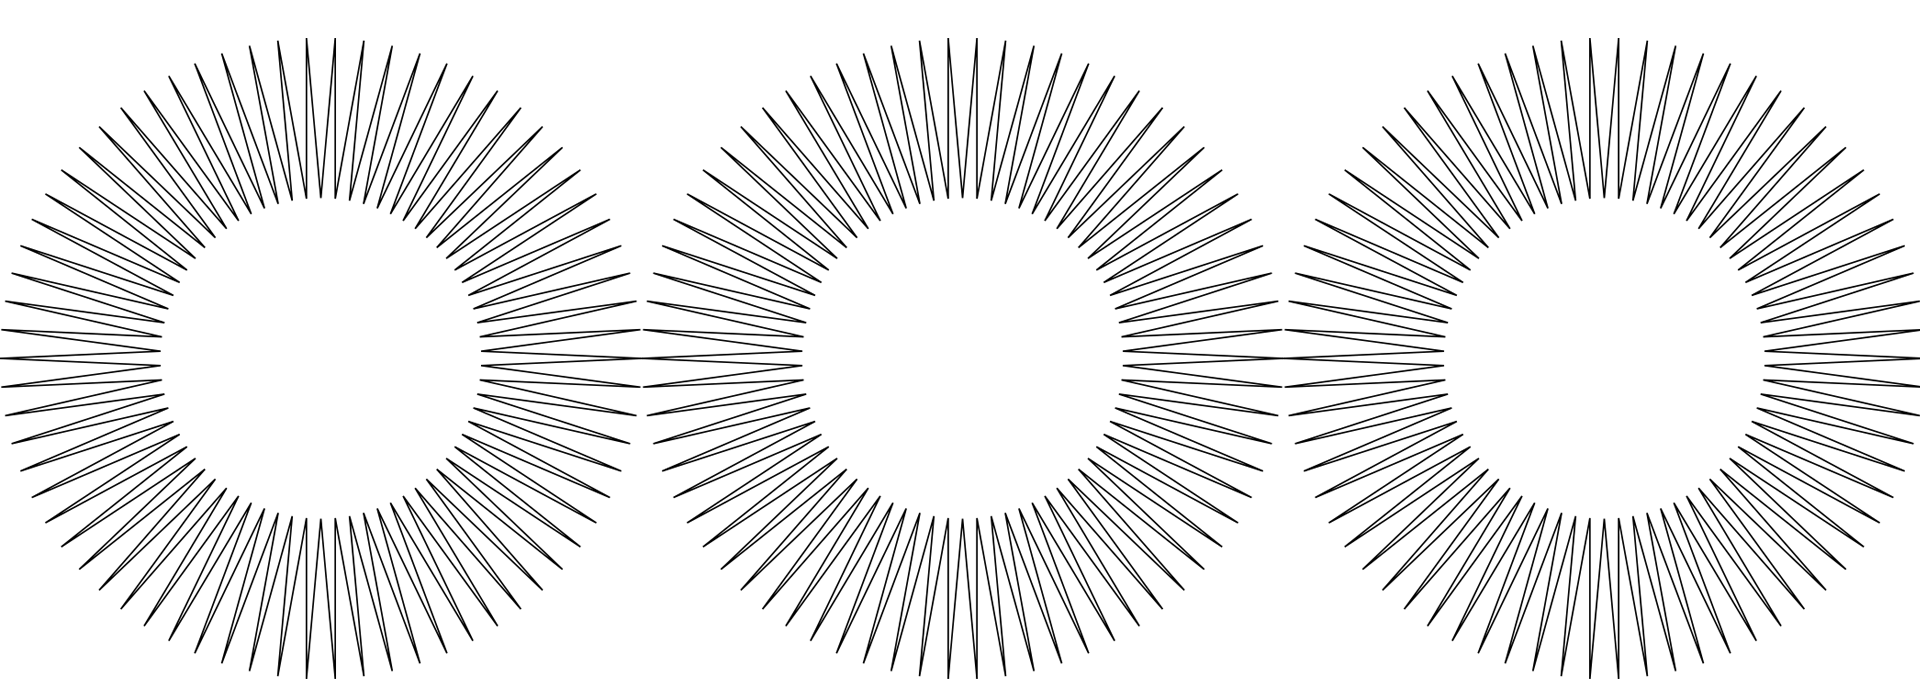 3 estrelas circulares de várias pontas em preto e branco